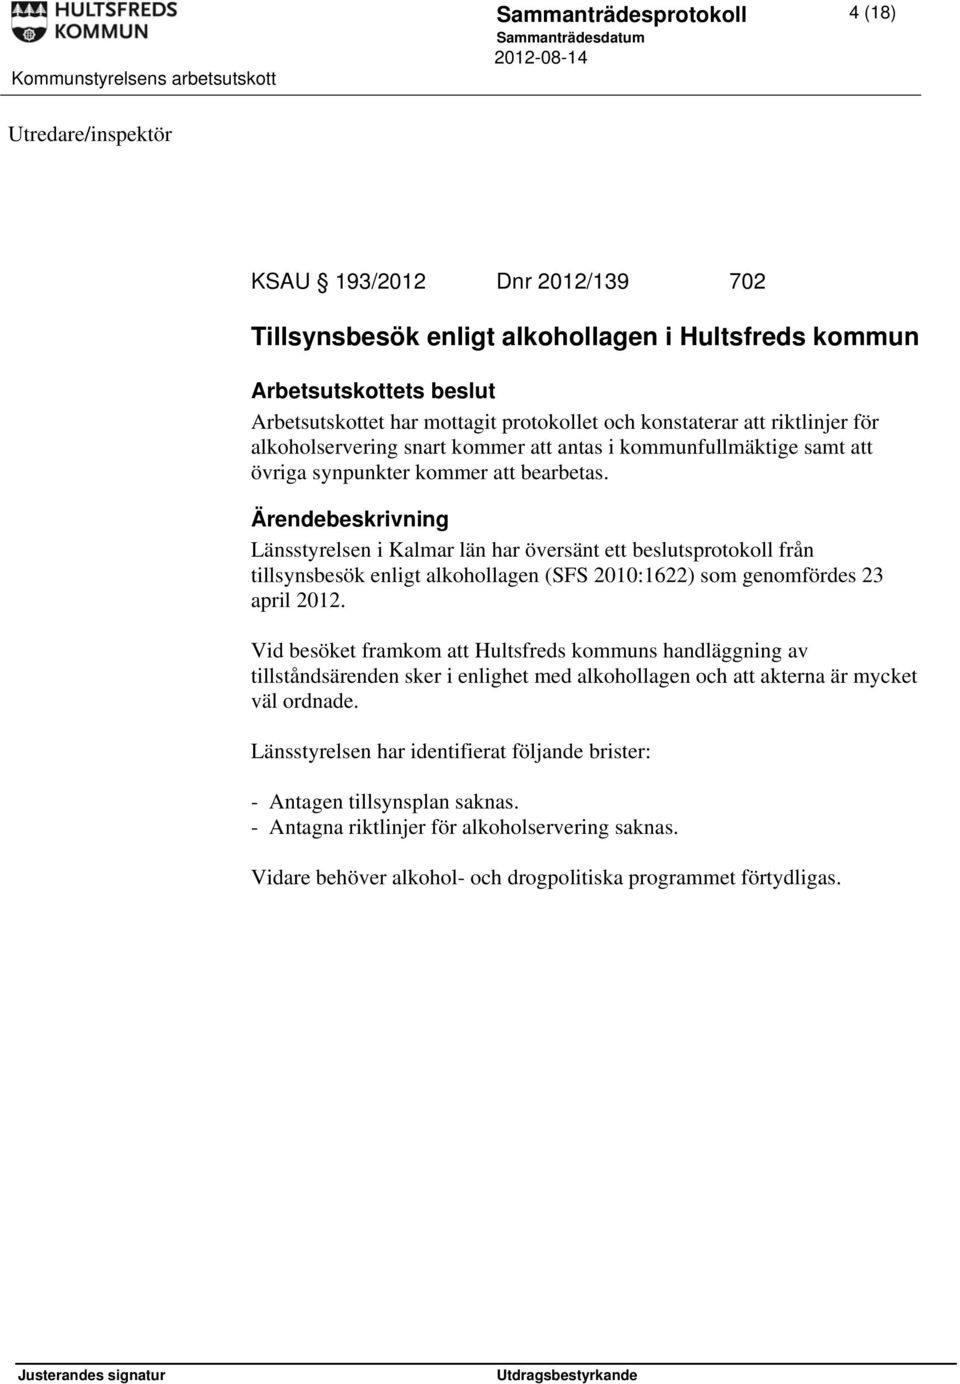 Länsstyrelsen i Kalmar län har översänt ett beslutsprotokoll från tillsynsbesök enligt alkohollagen (SFS 2010:1622) som genomfördes 23 april 2012.